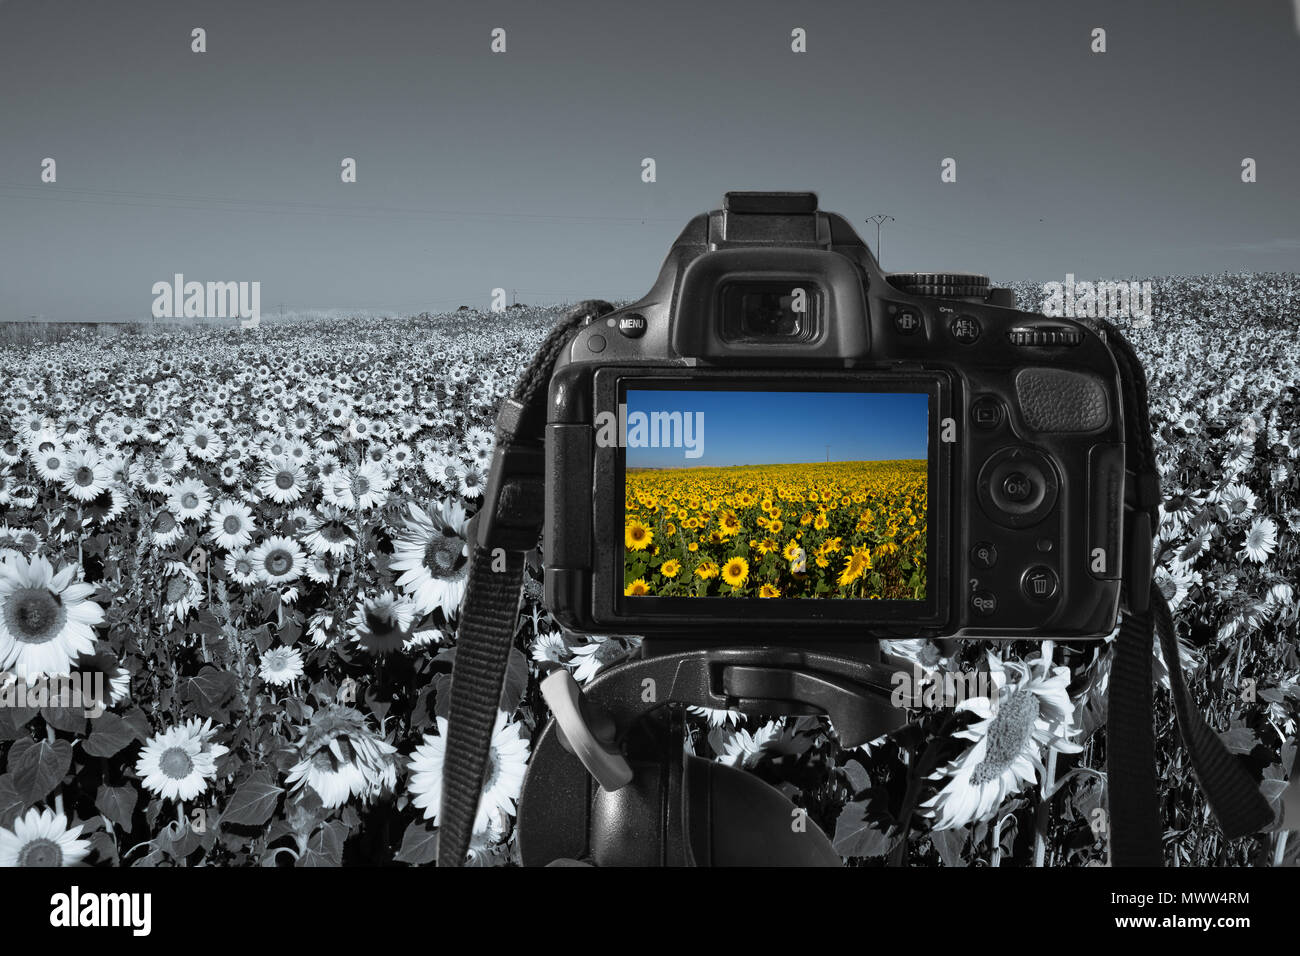 In prossimità di una fotocamera digitale con un'immagine di girasoli sul live view, girasoli monocromatica in background Foto Stock